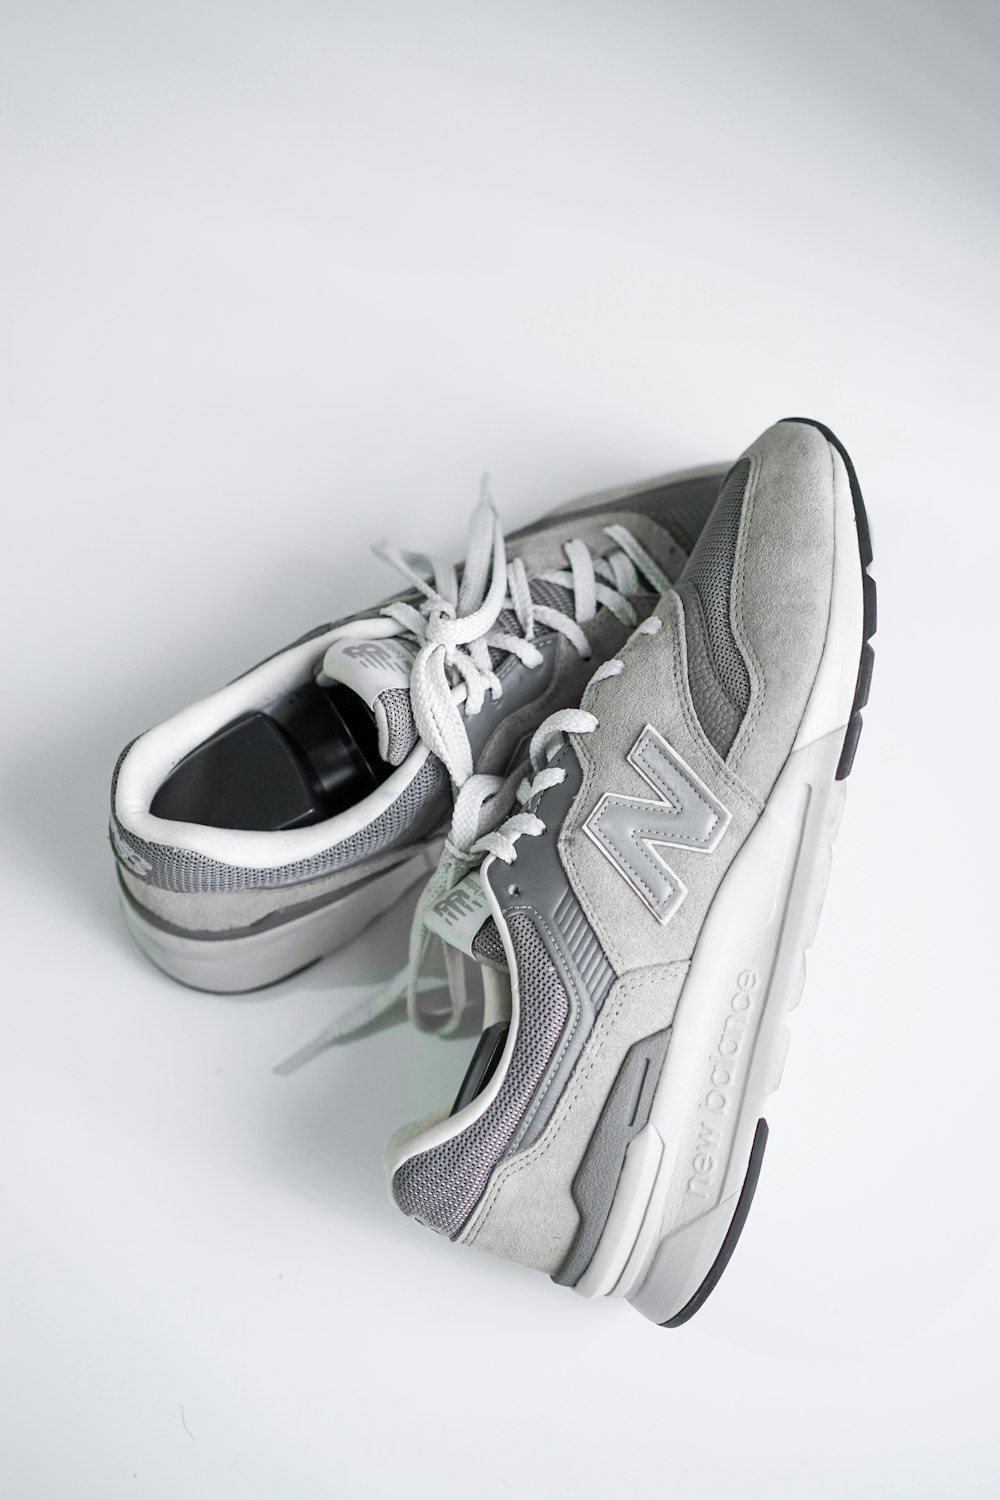 Zapatillas deportivas Nike grises y blancas